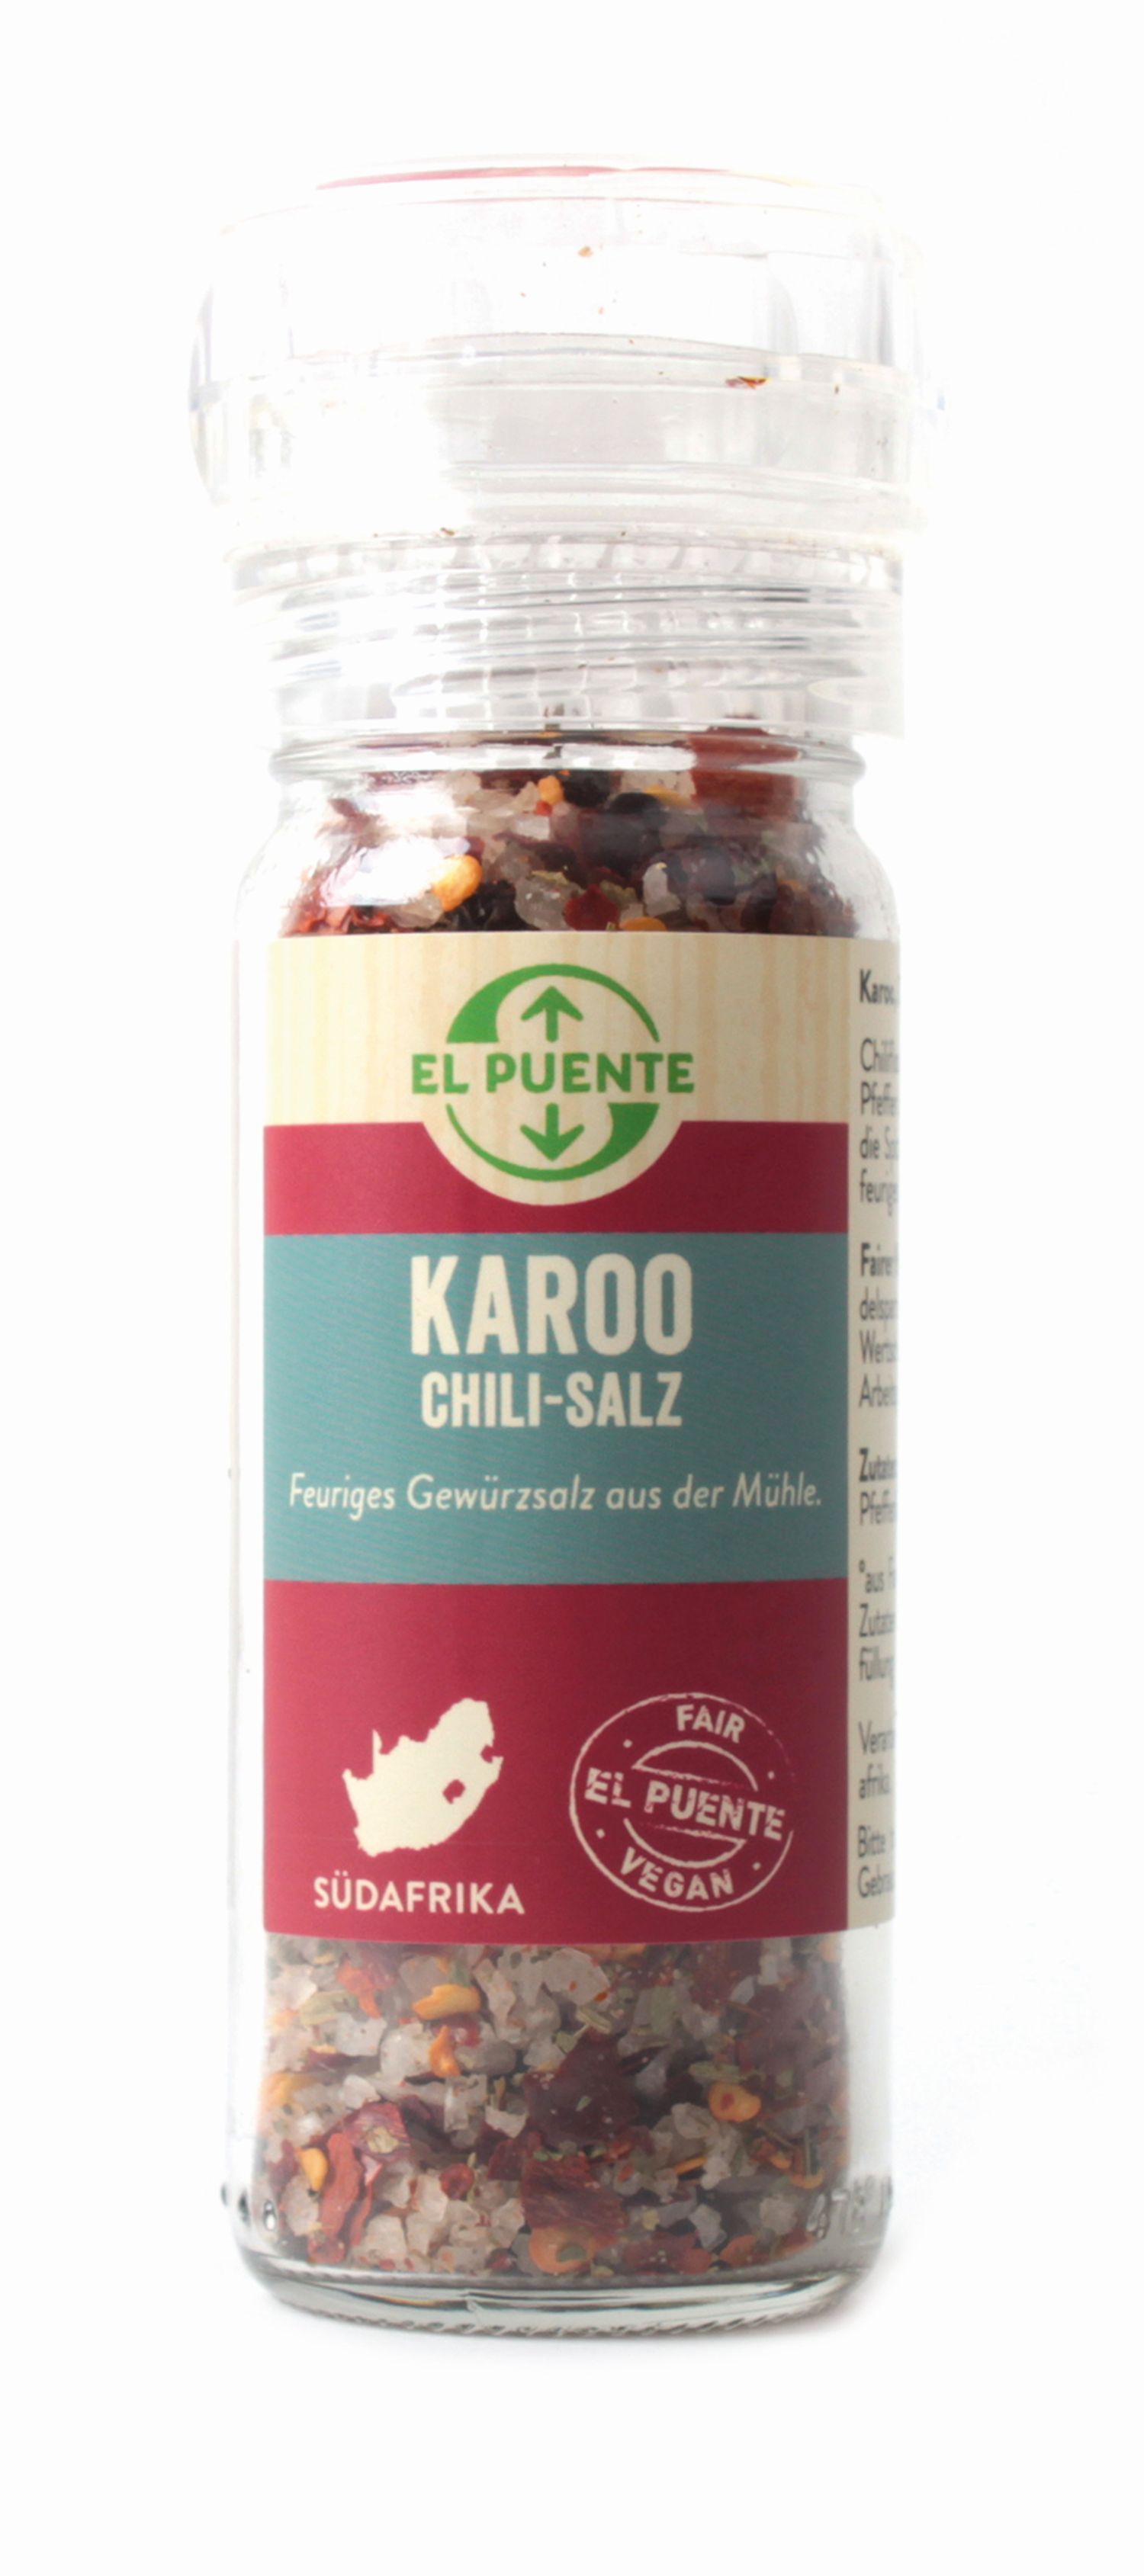 Karoo - Chilisalz in der Mühle